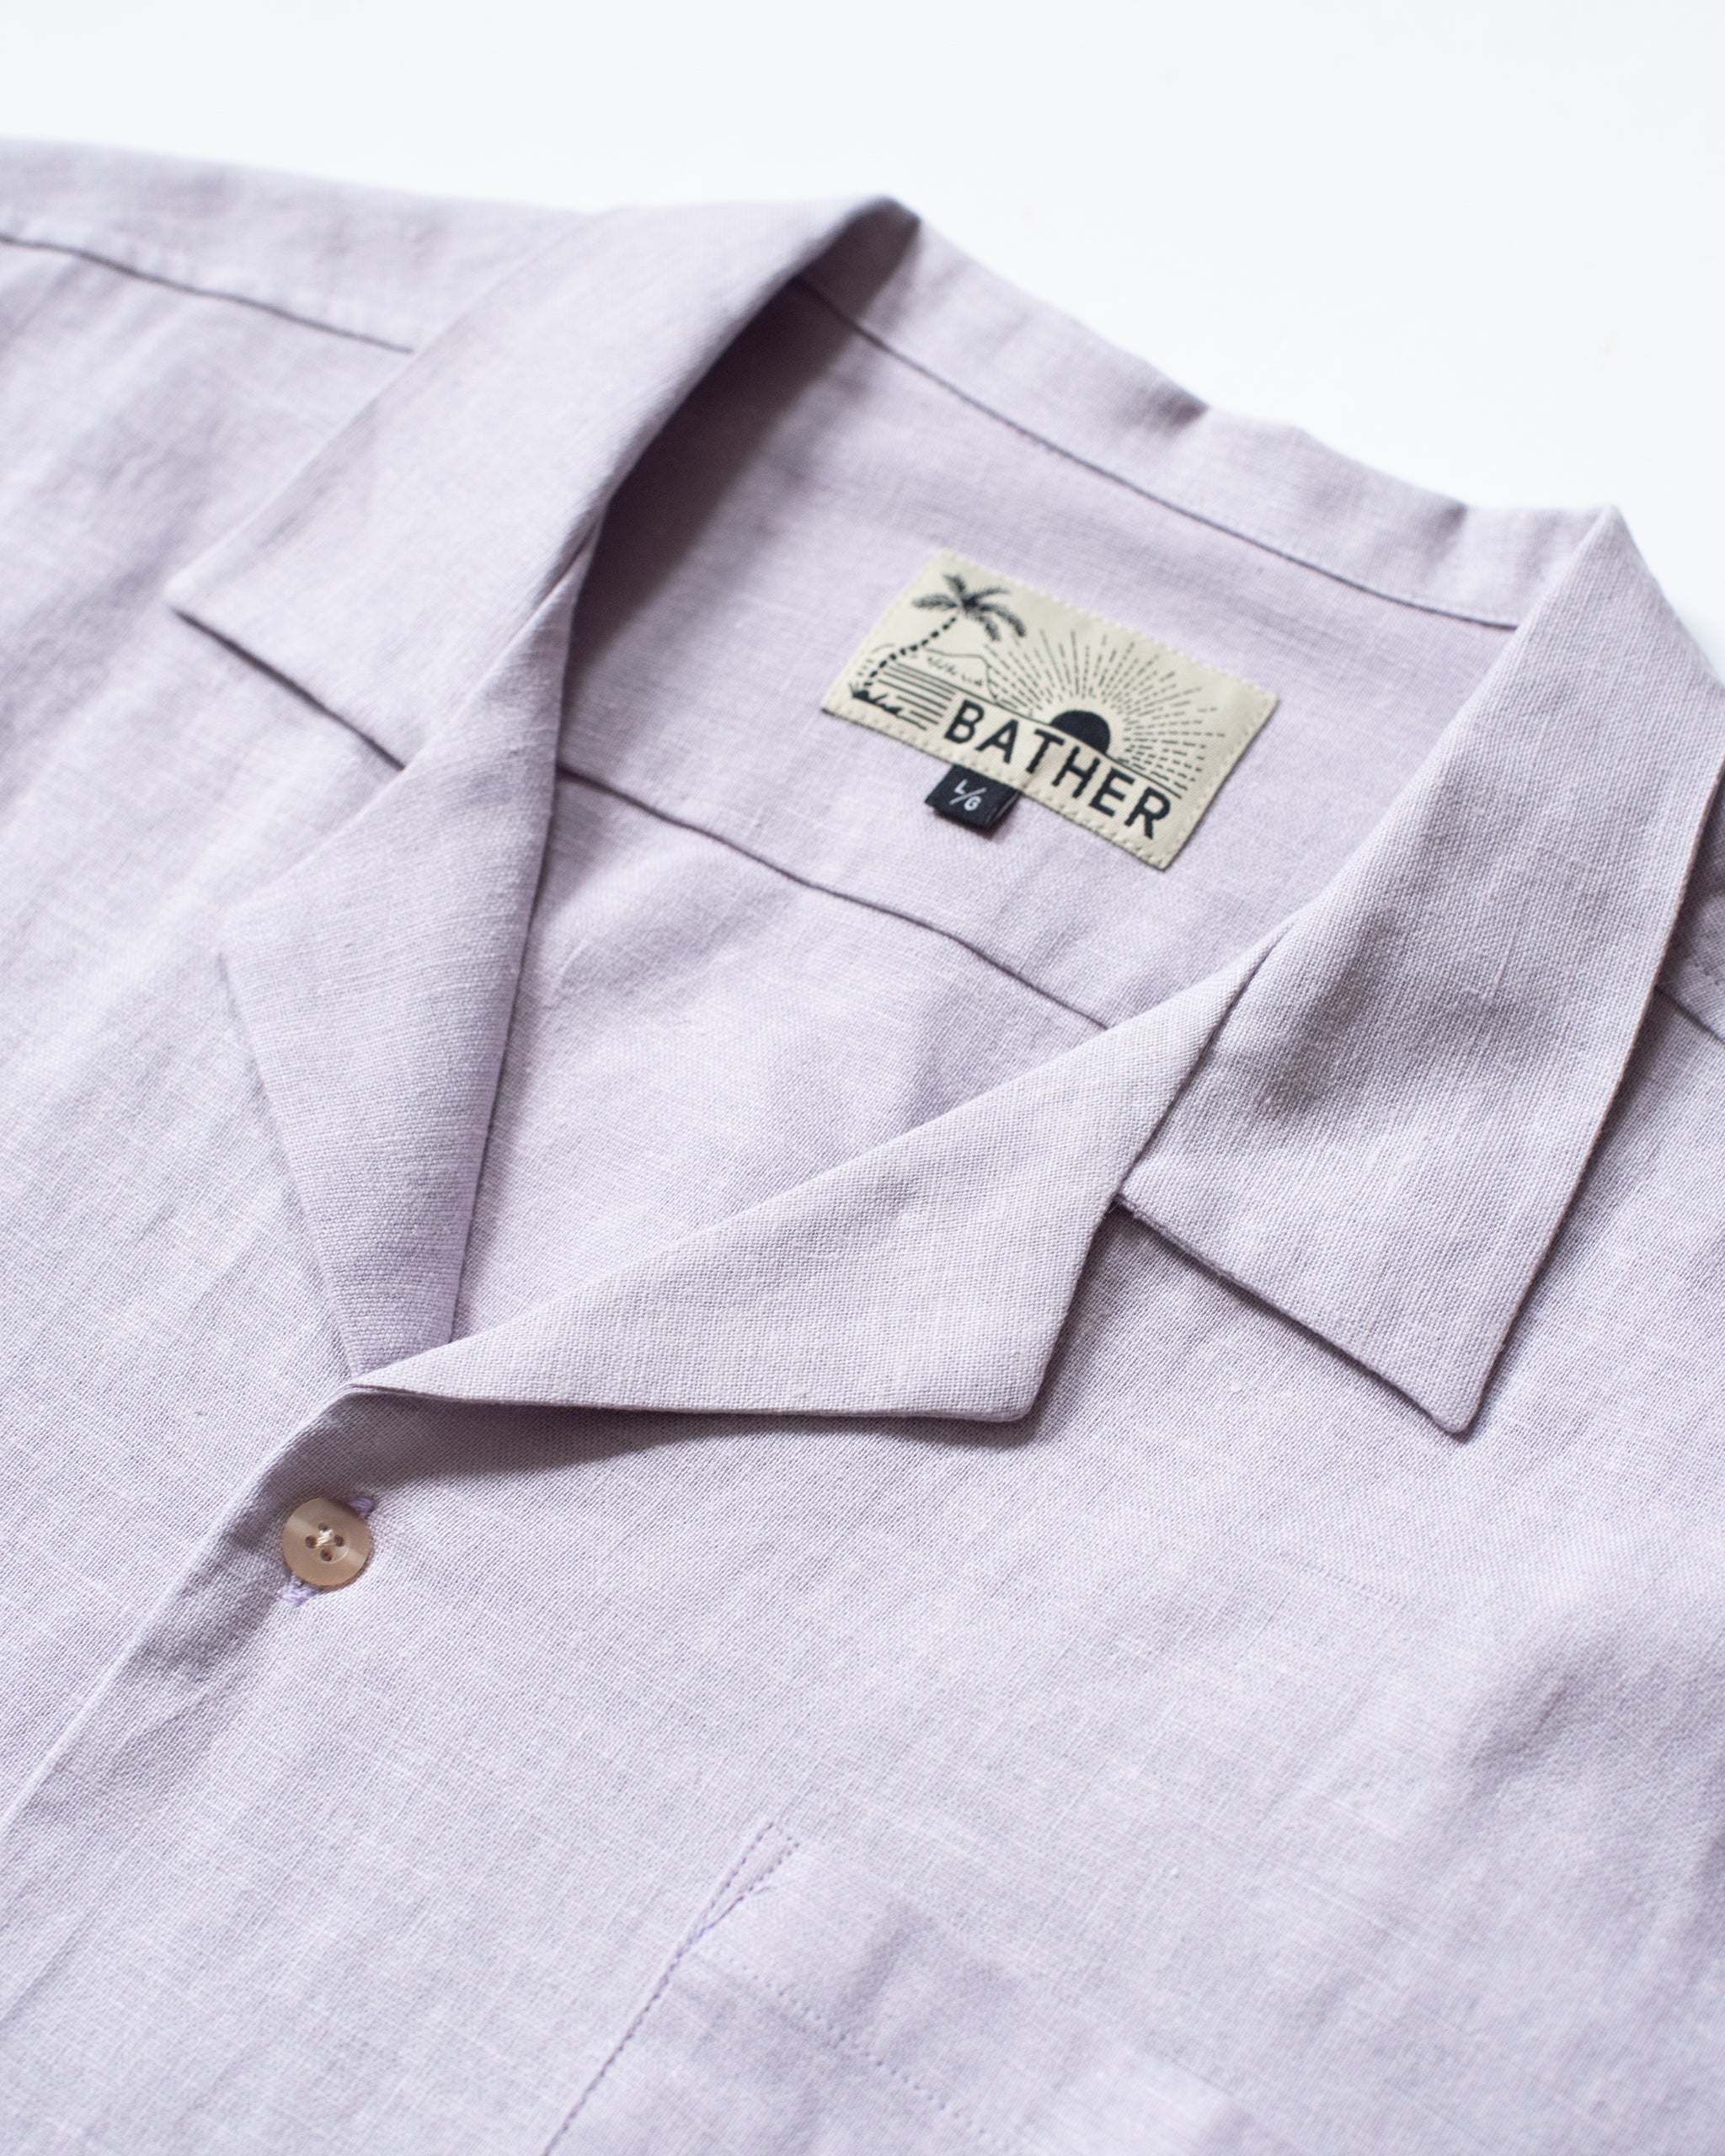 lavender linen traveler shirt close up